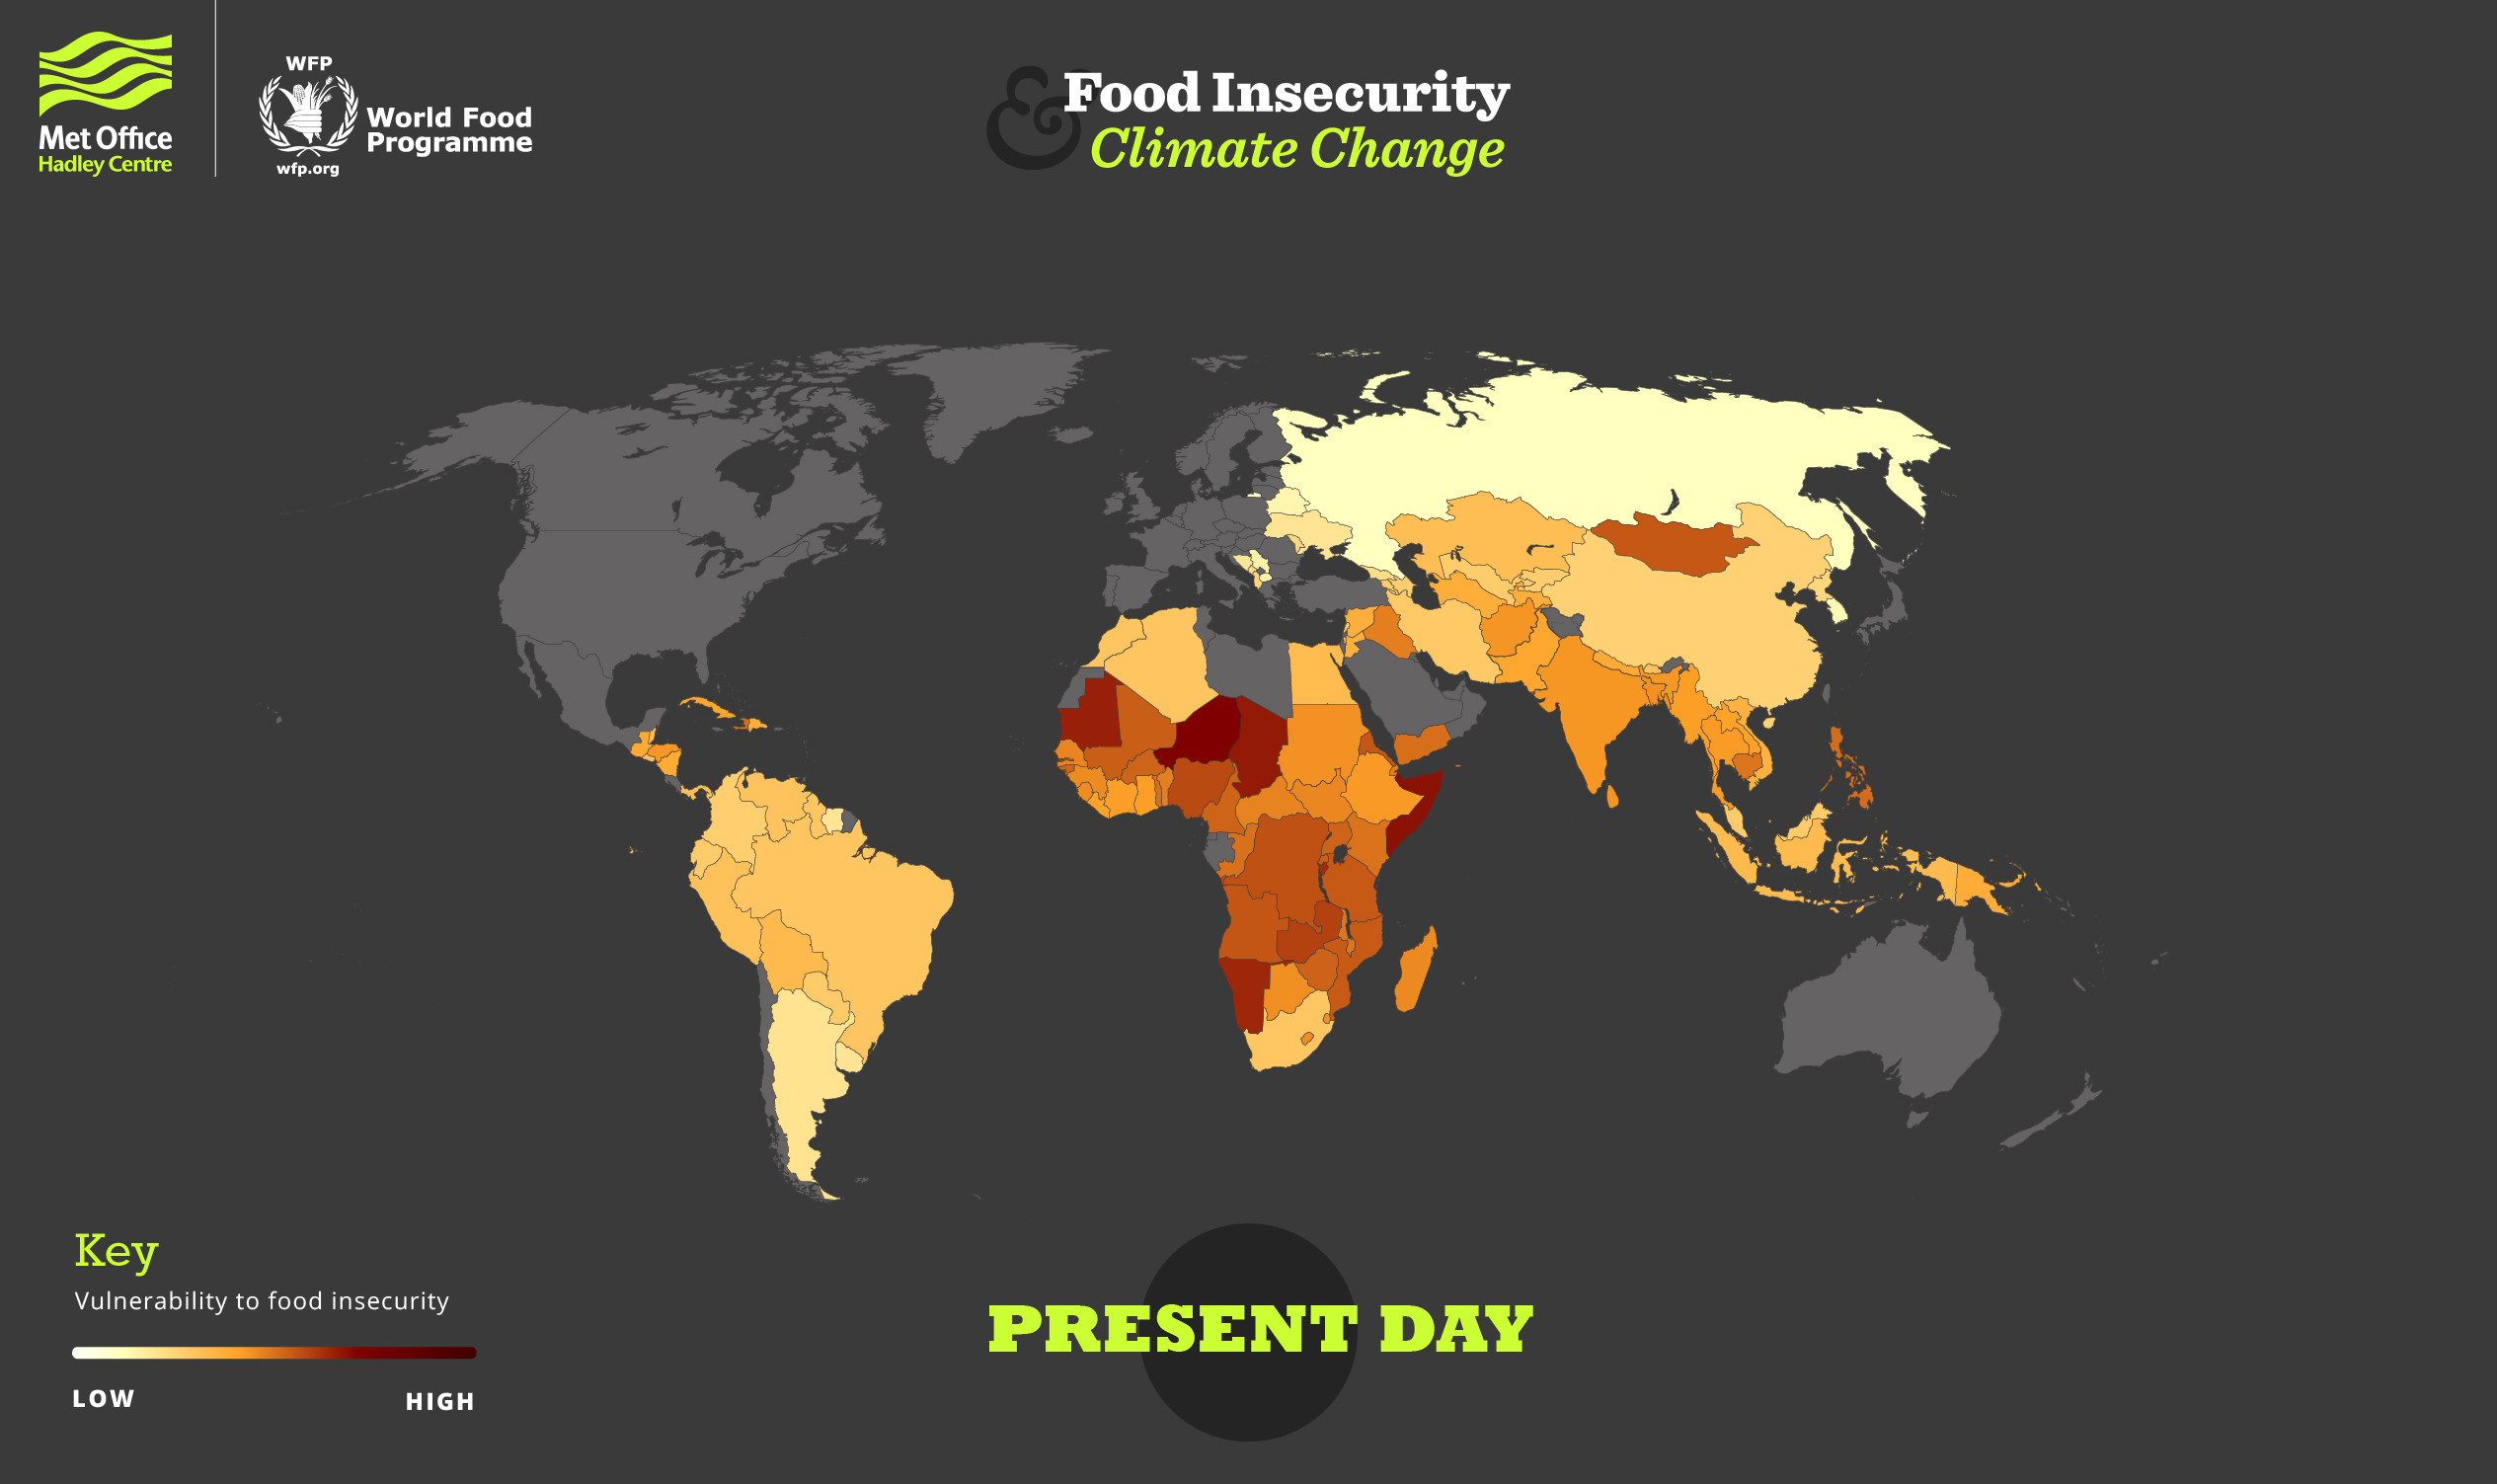 适应气候变化可以防止粮食不安全引发的冲突